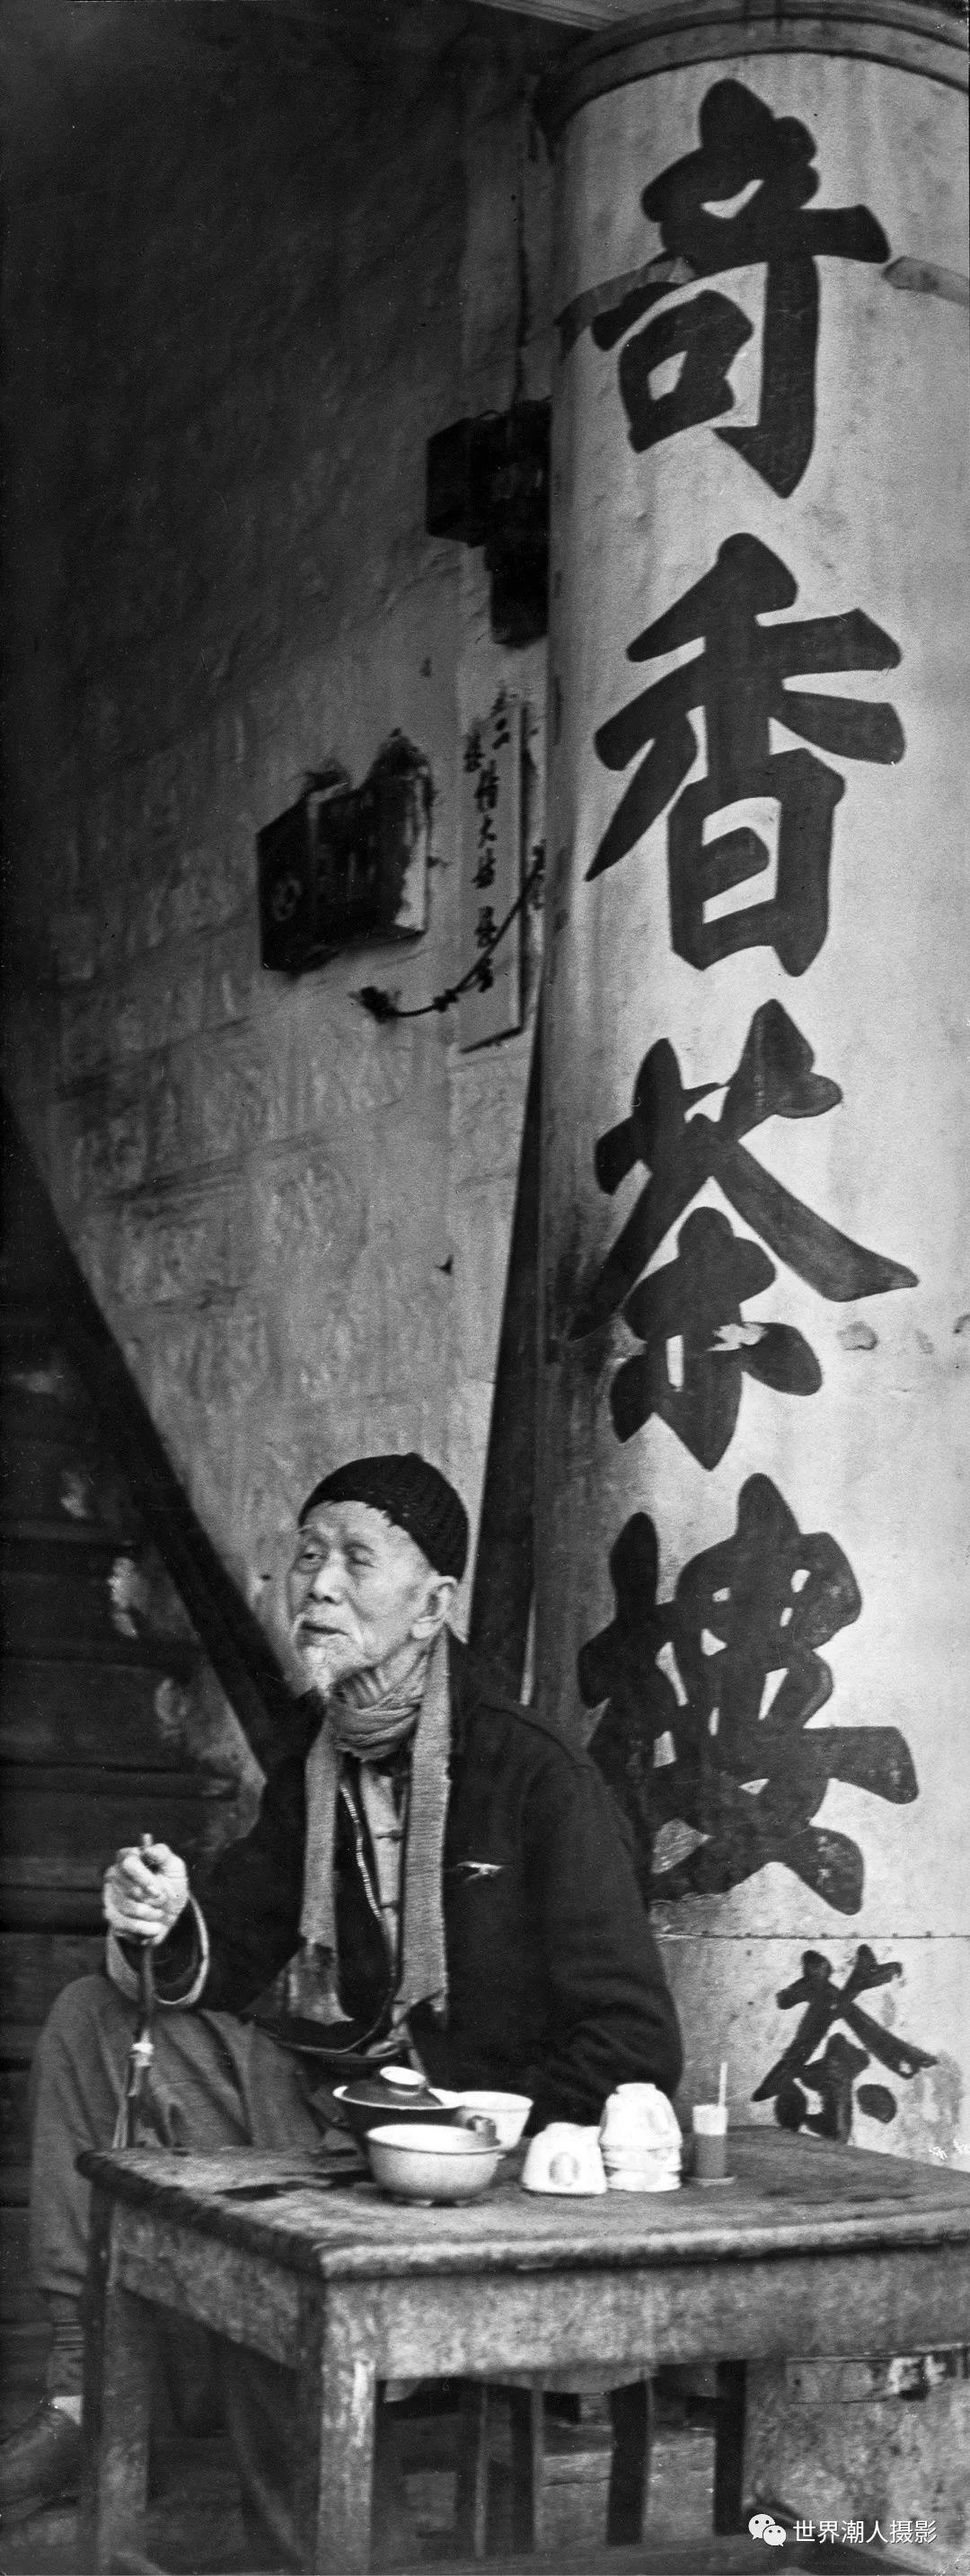 hk_c_獨飲，1948年廣東惠陽.jpg